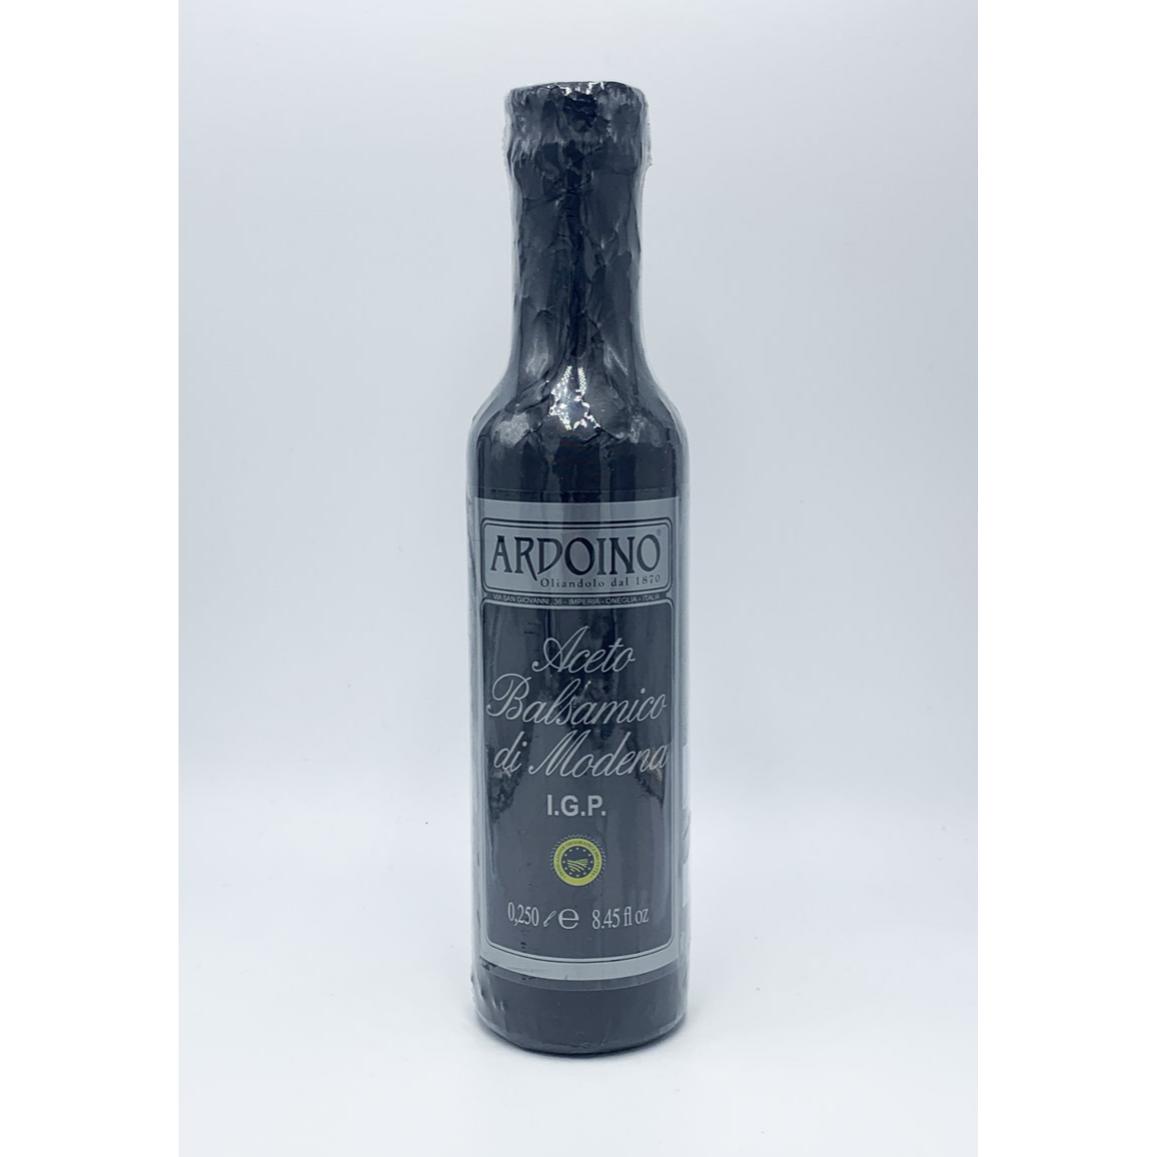 名称ブドウ酢メーカーアルドイーノ原産国イタリア内容量250ml保存方法高温多湿及び直射日光を避け、常温で保存してください。輸入者株式会社フードライナーアルドイーノ社は1870年リグーリア州インペリアに創業しました。高品質なオリーブオイルとオリーブ製品のメーカーとして古くから人々に知られてきました。小規模ながらその名前は世界中に知れ渡っています。 アルドイーノ社のオリーブオイルの特徴 アルドイーノ家がイタリア、リグーリア州でオリーブオイルの生産を始めたのは1870年の事でした。3代目のナンニ・アルドイーノは品質向上に努め、大きな努力と研究により素晴らしいエキストラヴァージンオイルを作りだしましたが、1974年に教養があり目の肥えた人々に見初められるまでは品質が高いにも拘わらず苦しい立場に置かれていました。今日ではアルドイーノ社は最も小さな作り手の一つでありながら、高品質のエキストラヴァージン・オリーヴオイルを生産するフラントイオ（オリーブオイル製造業者）であるとヨーロッパ中で称賛されています。ARDOINO アルドイーノ モデナ産バルサミコ酢　IGP 250mlモスト（ブドウ果汁）に10％ワインヴィネガーと最低10年熟成させたバルサミコをブレンド。その後最低3年間木樽で熟成させています。ブドウ品種はランブルスコ、サンジョヴェーゼ、トレッビアーノ、アルバーナ、アンチェロッタ、フォルターナ、モントゥーニ種。 酸度：6．0％